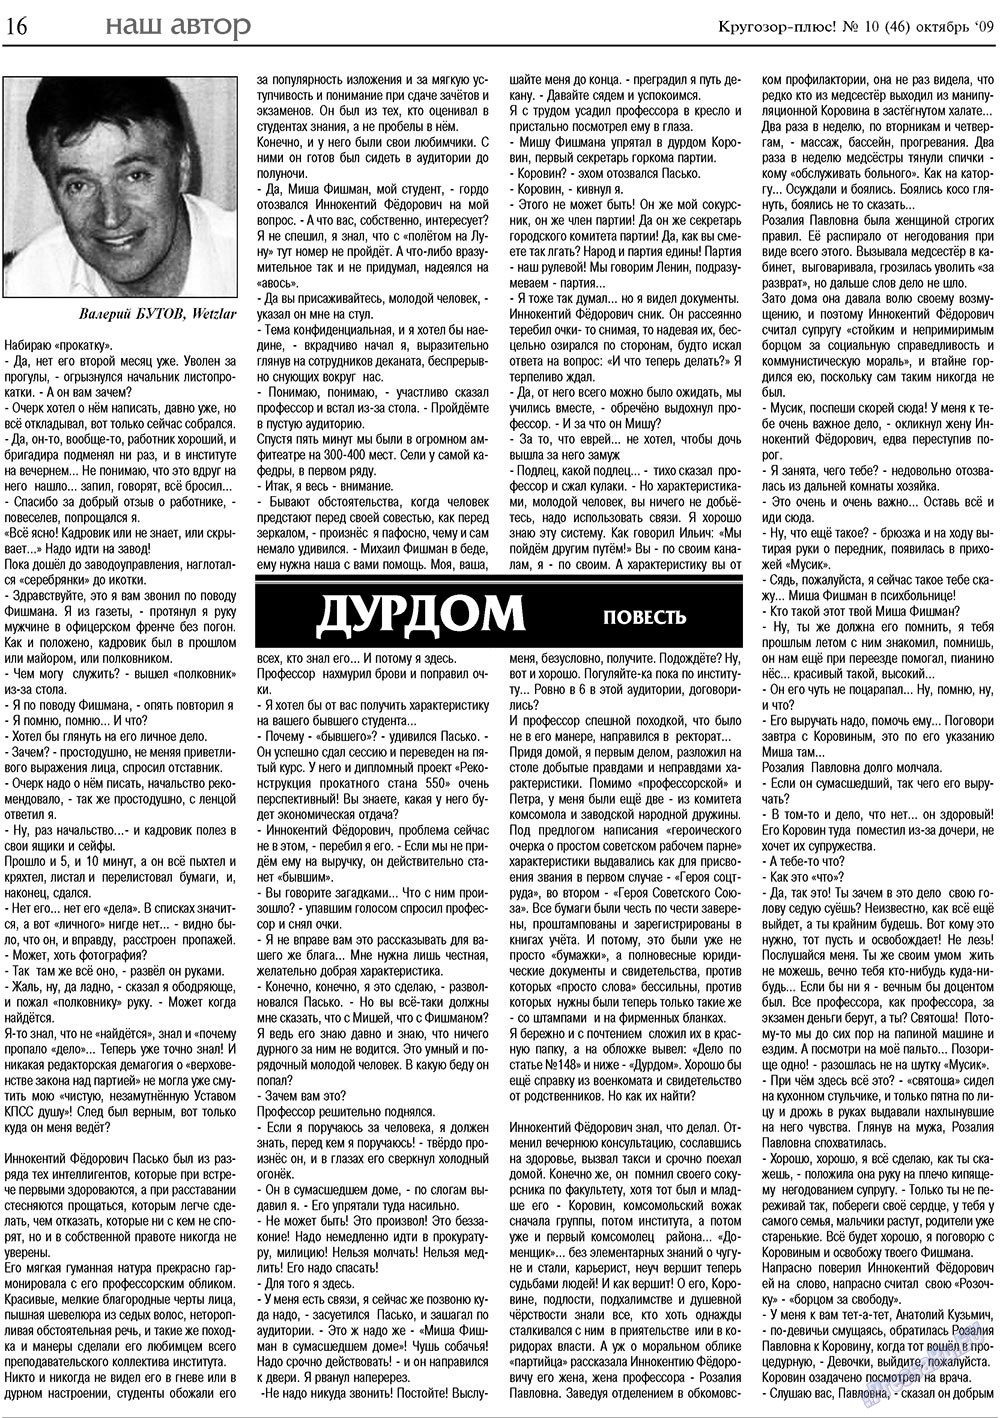 Кругозор плюс!, газета. 2009 №10 стр.16